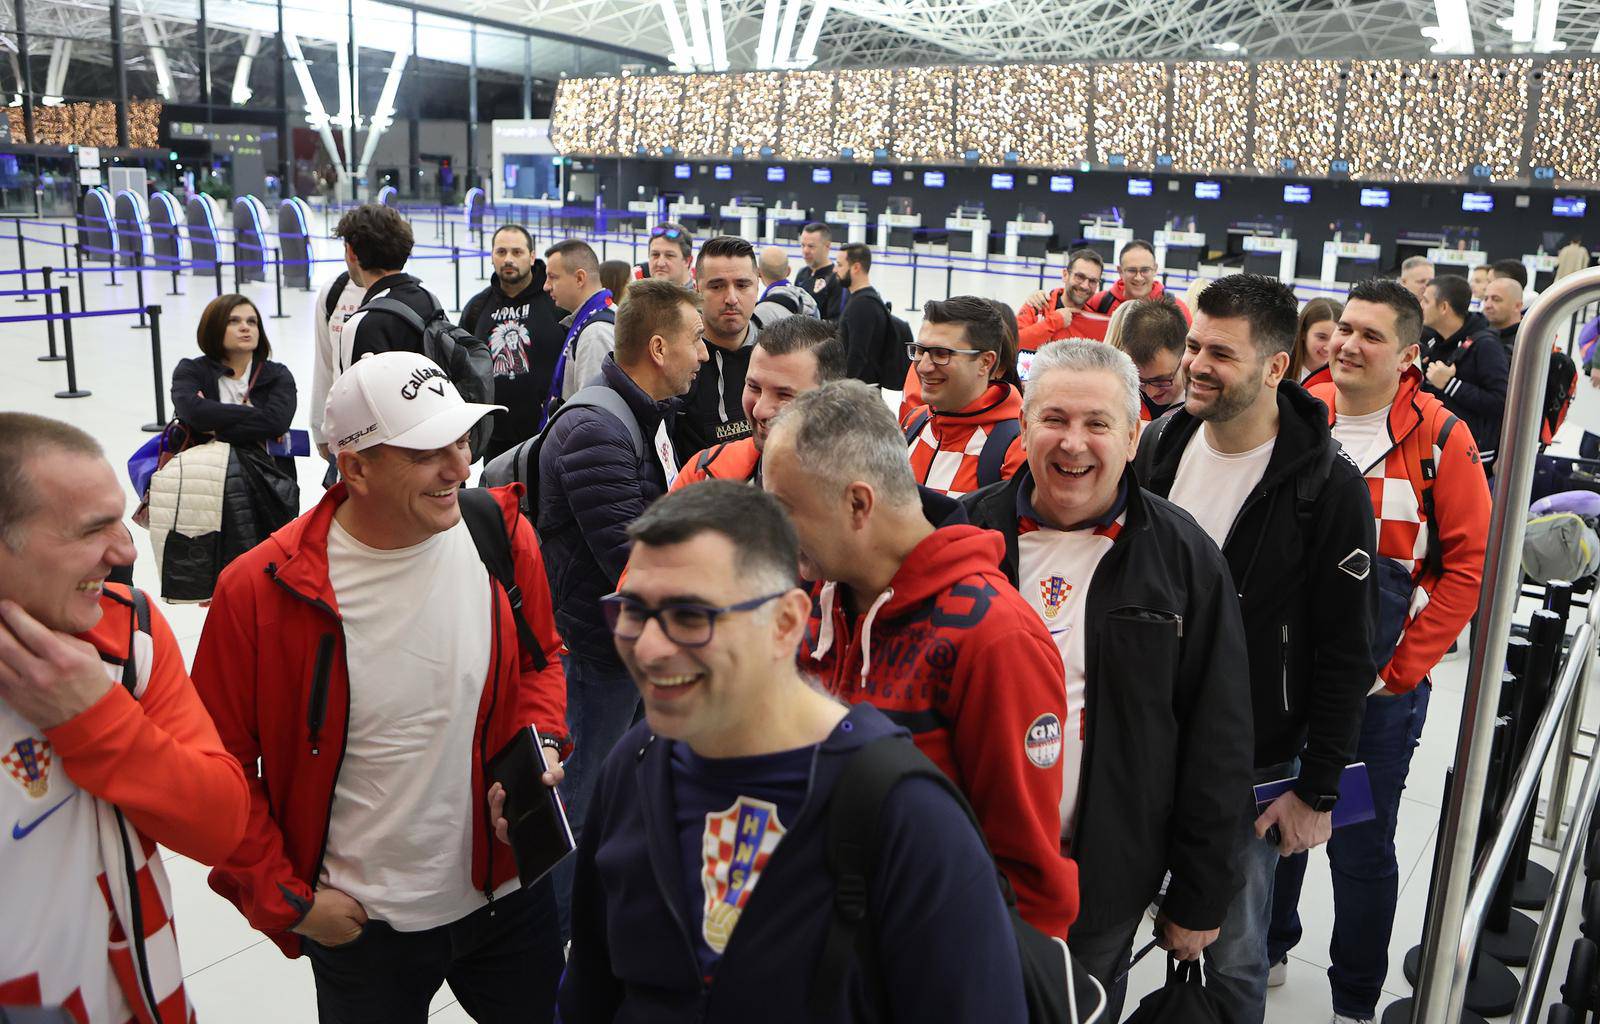 Zagrebu: U Zračnoj luci Franjo Tuđman okupili su se navijači prije odlaska u Katar na utakmicu između Hrvatske i Maroka